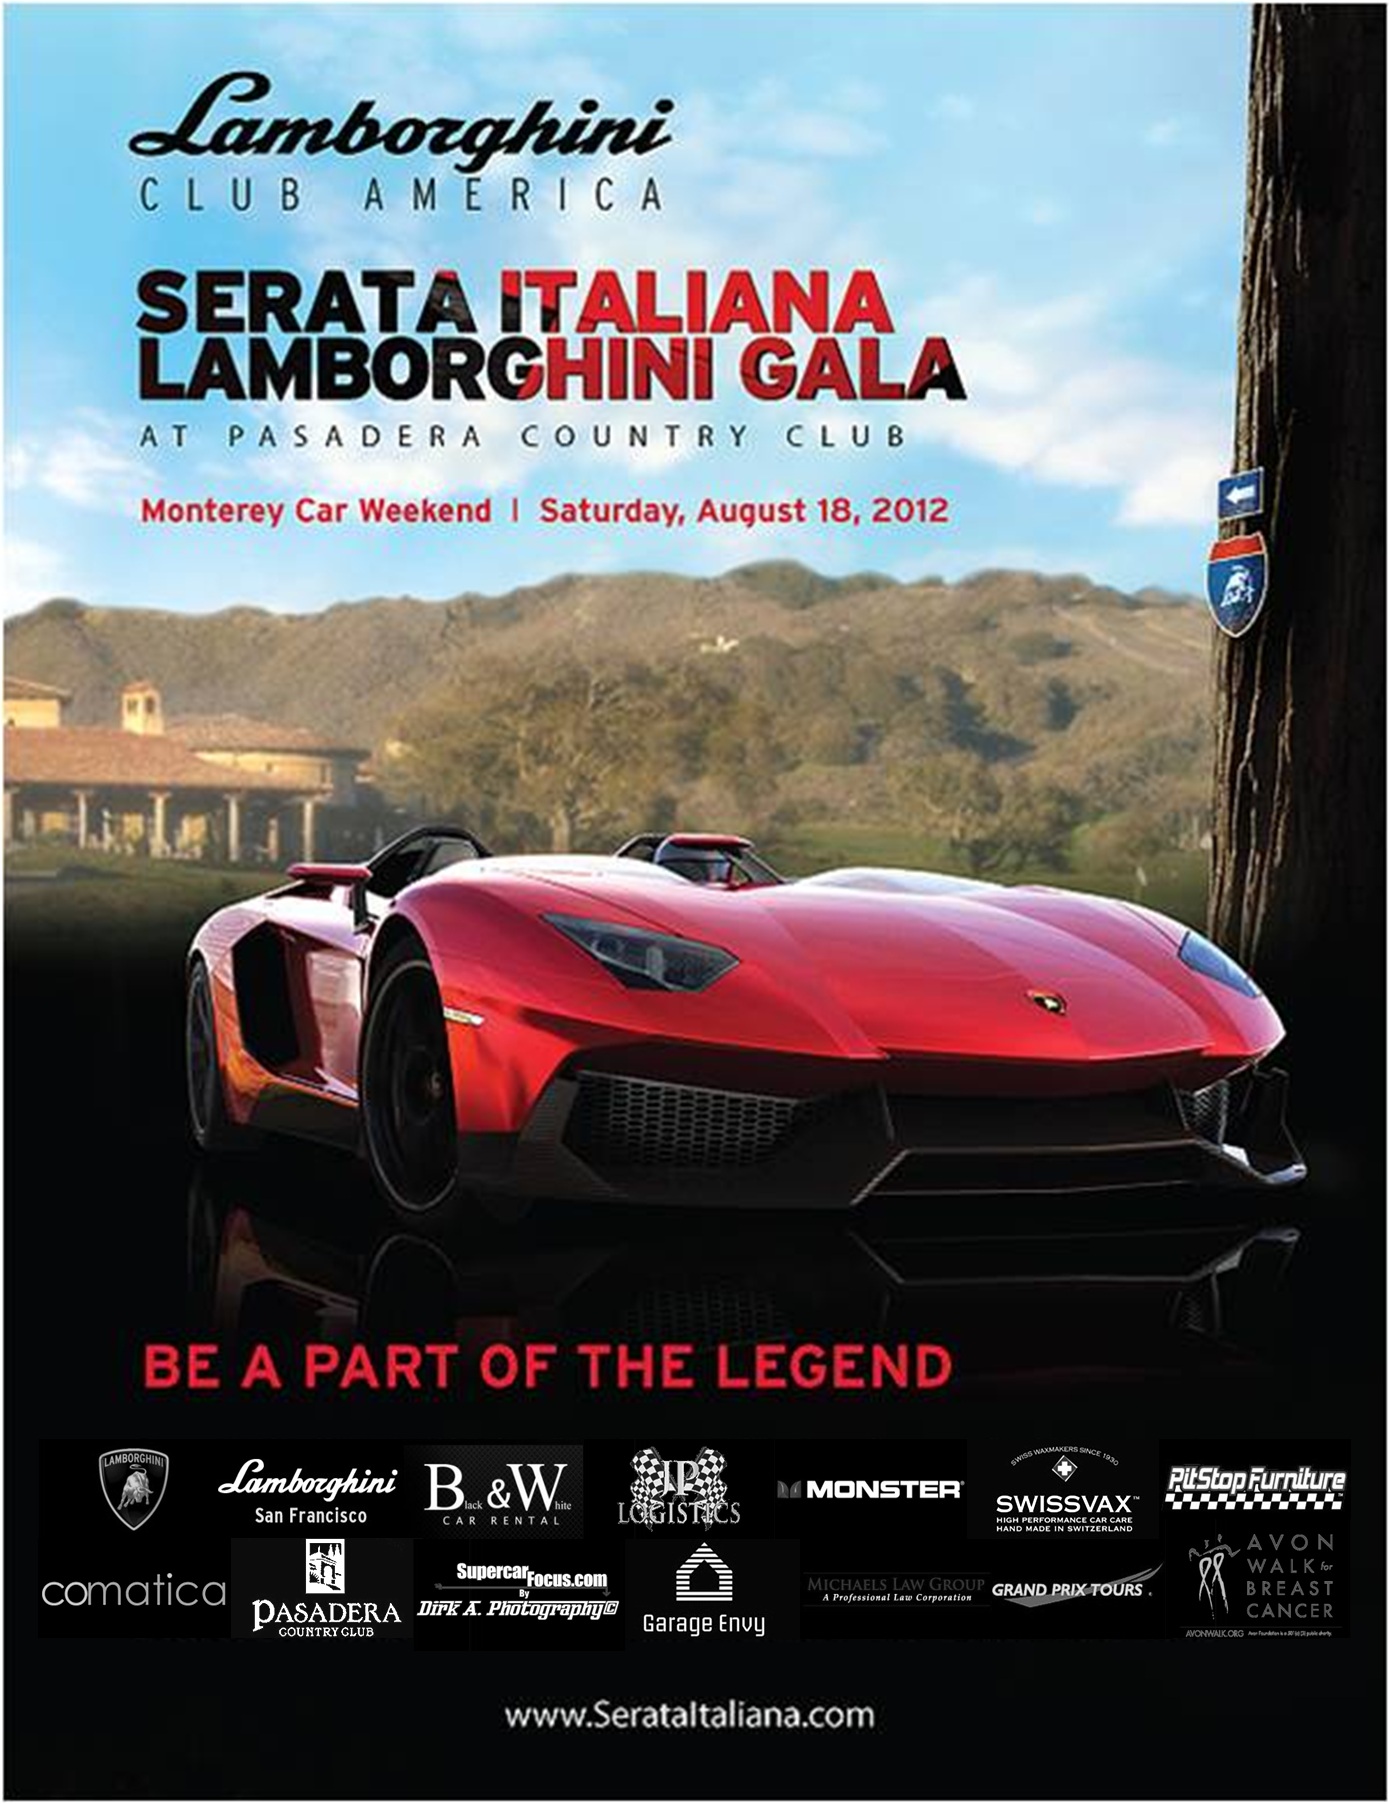 Serata Italiana with Sponsors